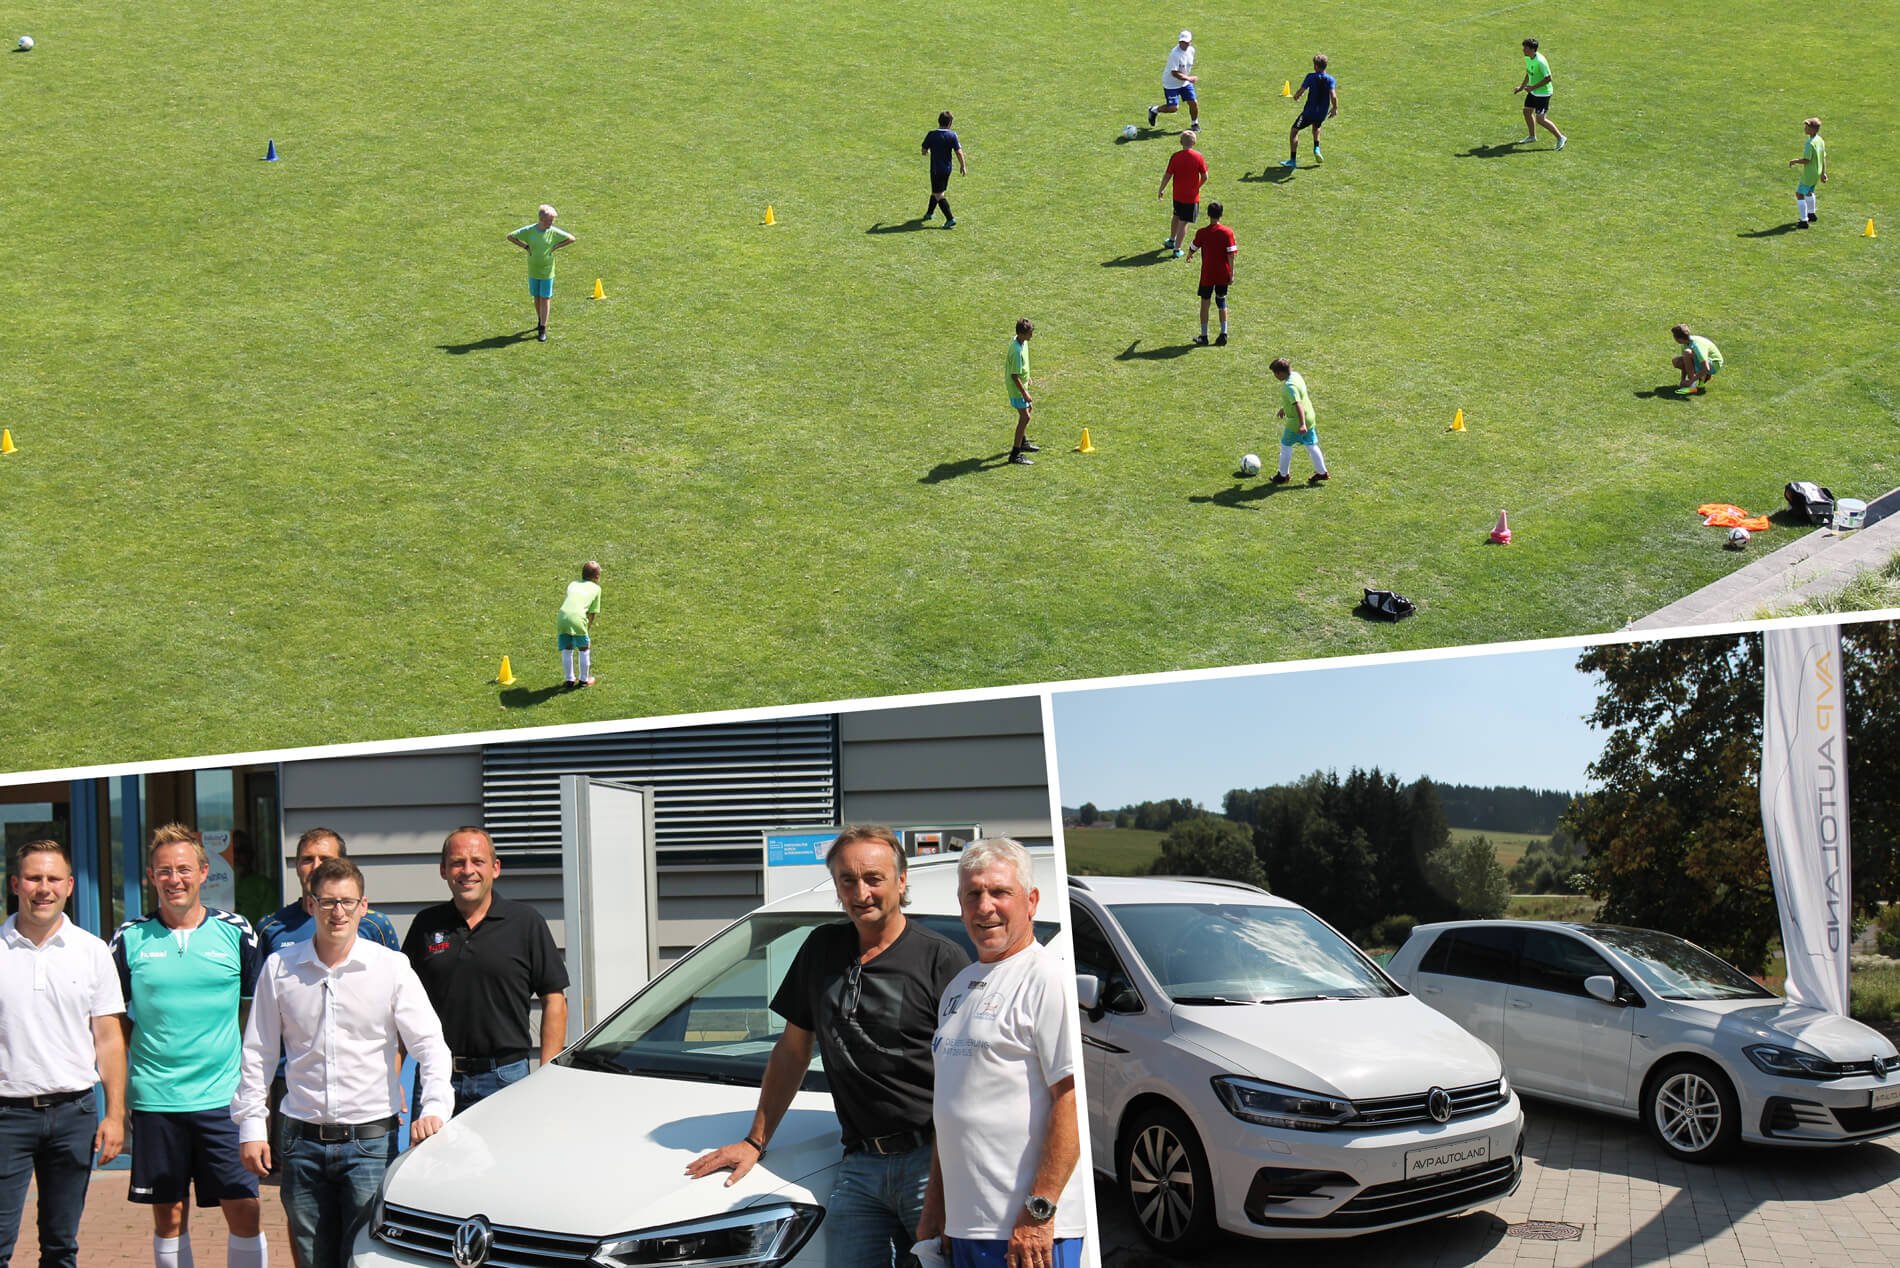 AVP Autoland | Sommerferienzeit = Fußballschulenzeit.